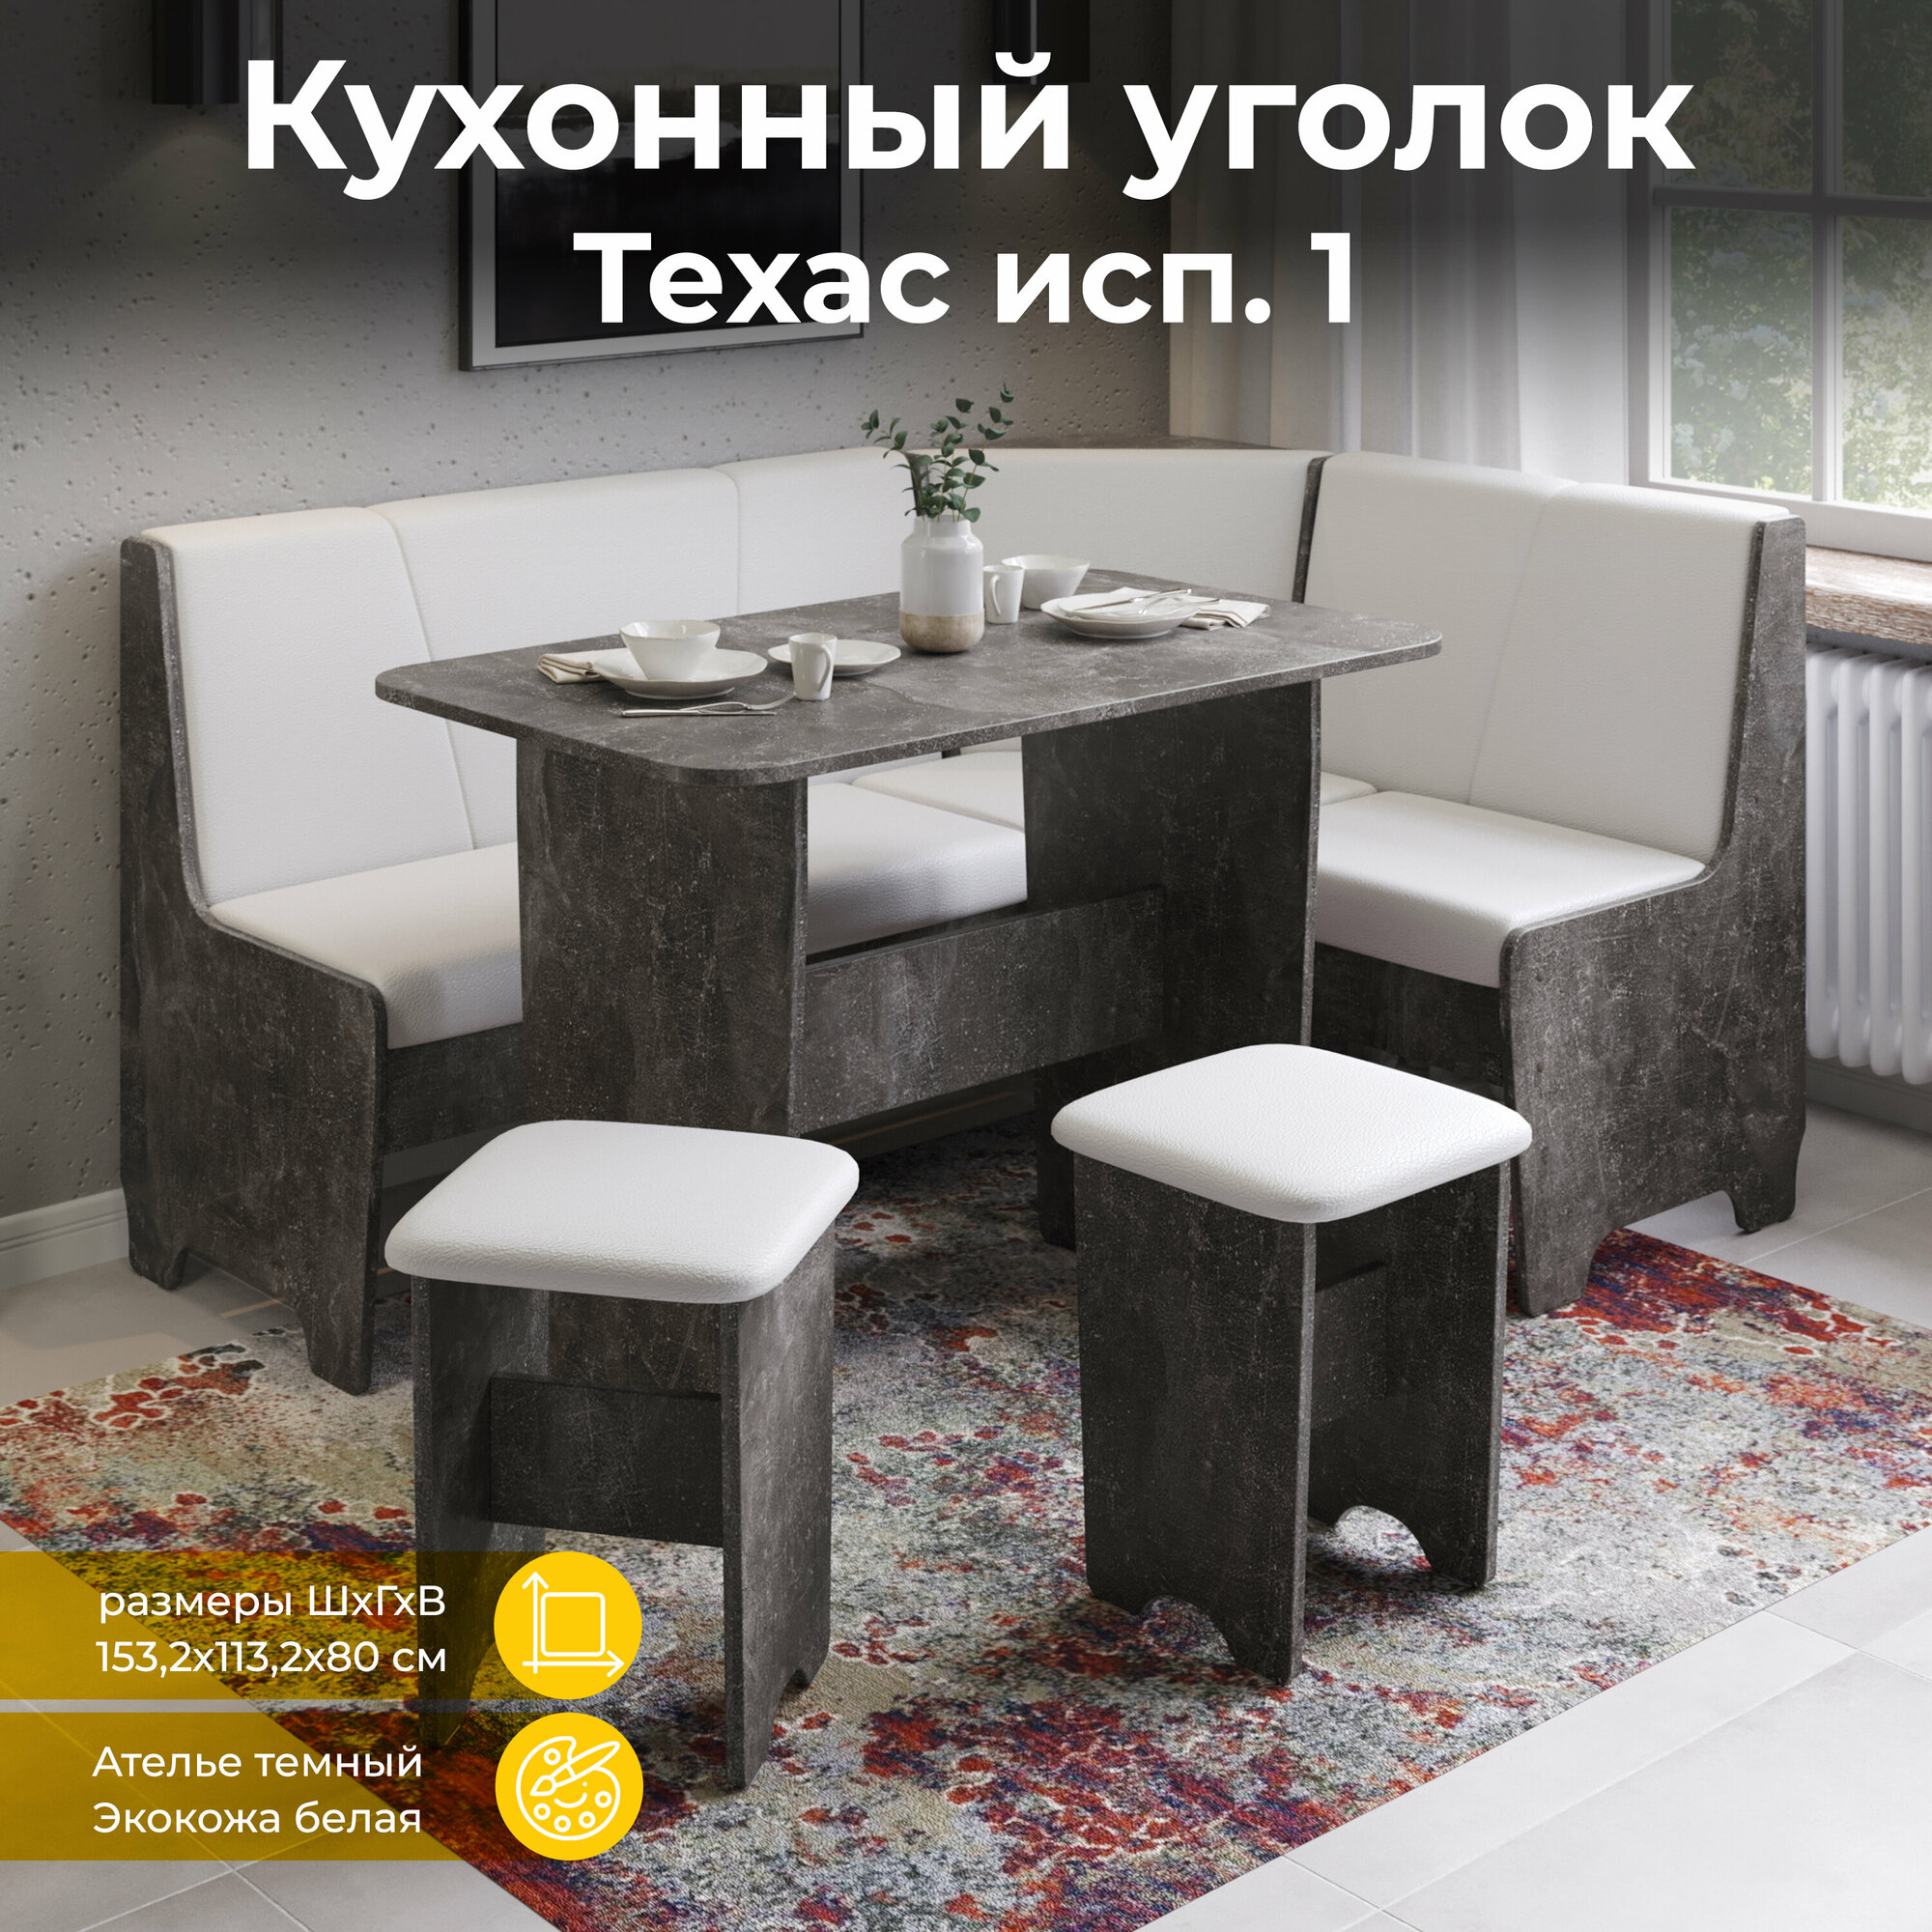 Кухонный уголок со столом и табуретками, кухонный диван с ящиками серый белый, Техас